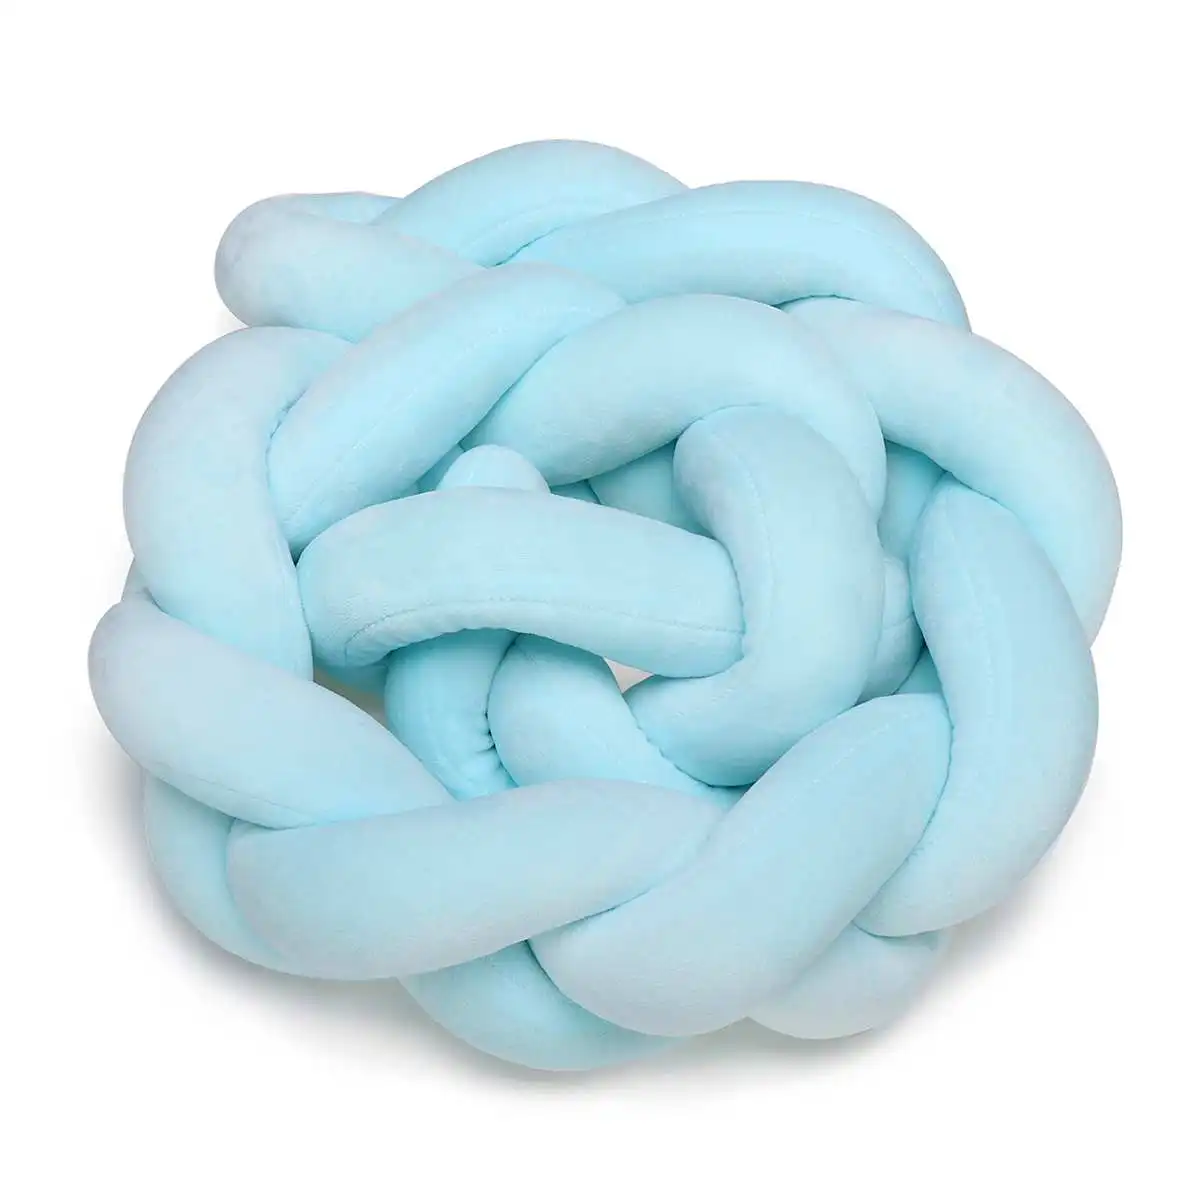 1,5 м минимализм хлопок детские постельные принадлежности кроватки бамперы Crea. tive Плетеный длинный узел мяч Подушка протектор подушка Новорожденный ребенок - Цвет: blue